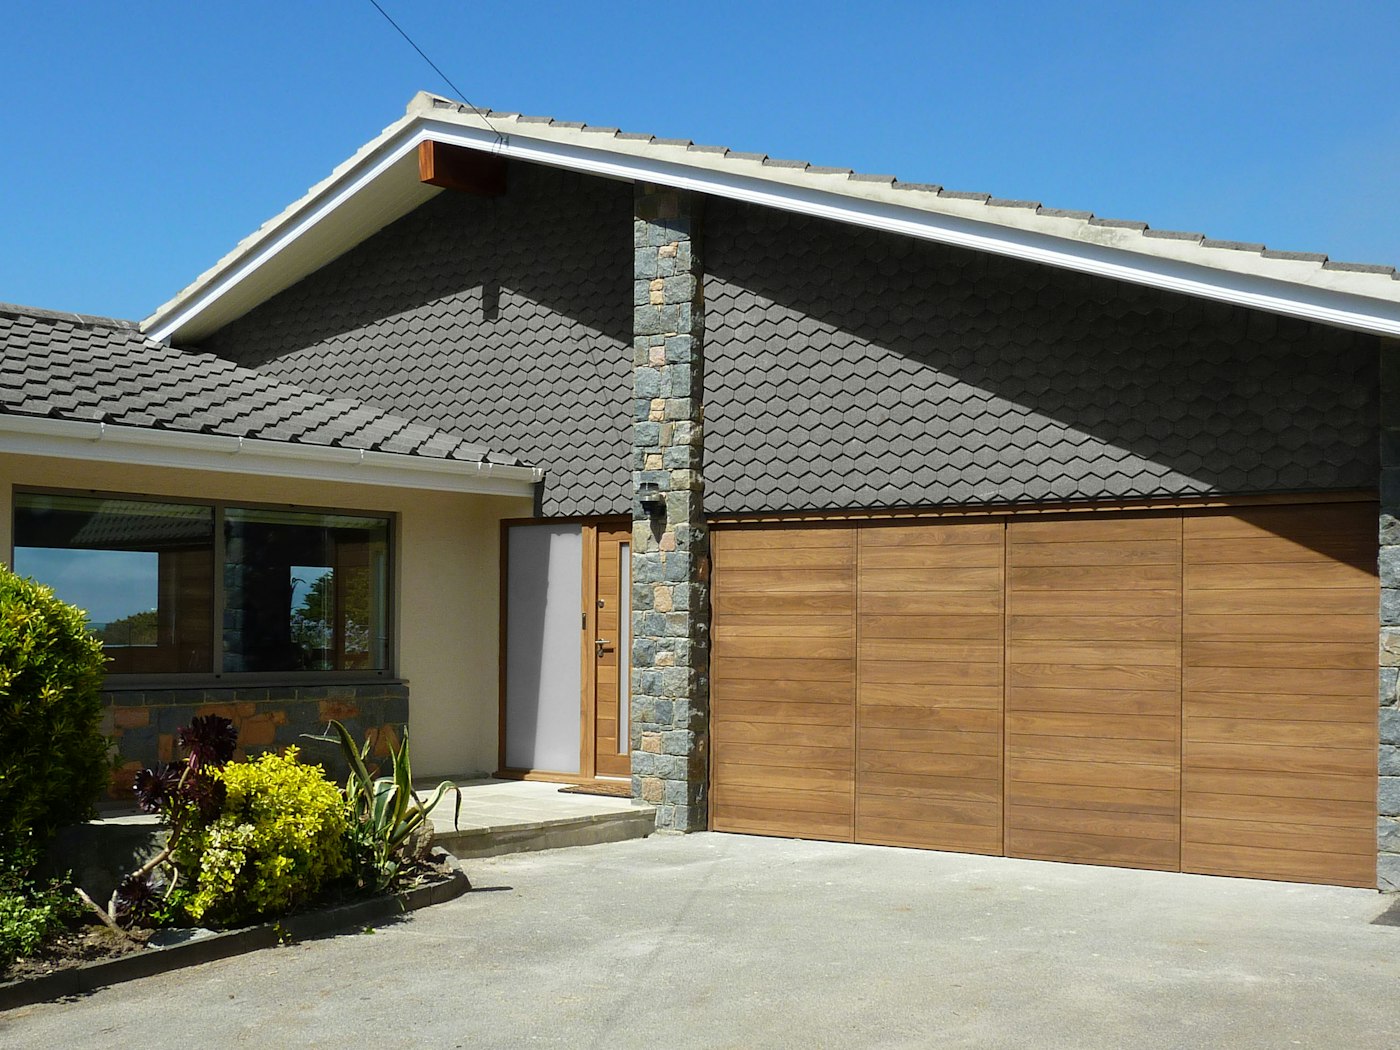 bifold garage doors in a parma design